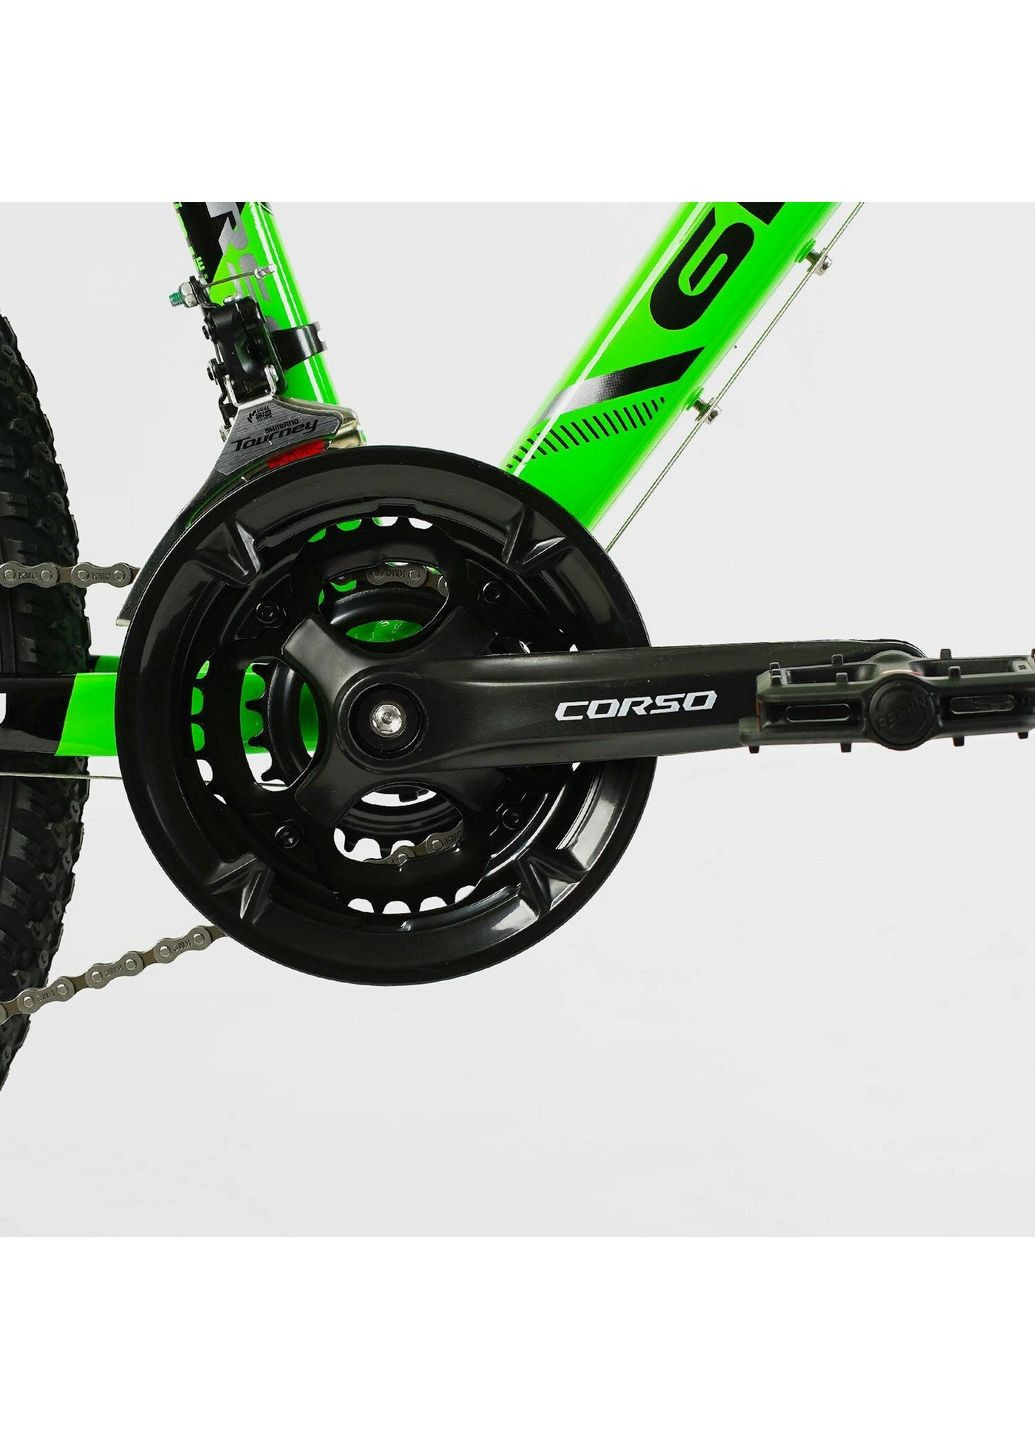 Велосипед спортивный GRAVITY", 21 скорость, алюминиевая рама, переключатели Shimano Corso (288135770)